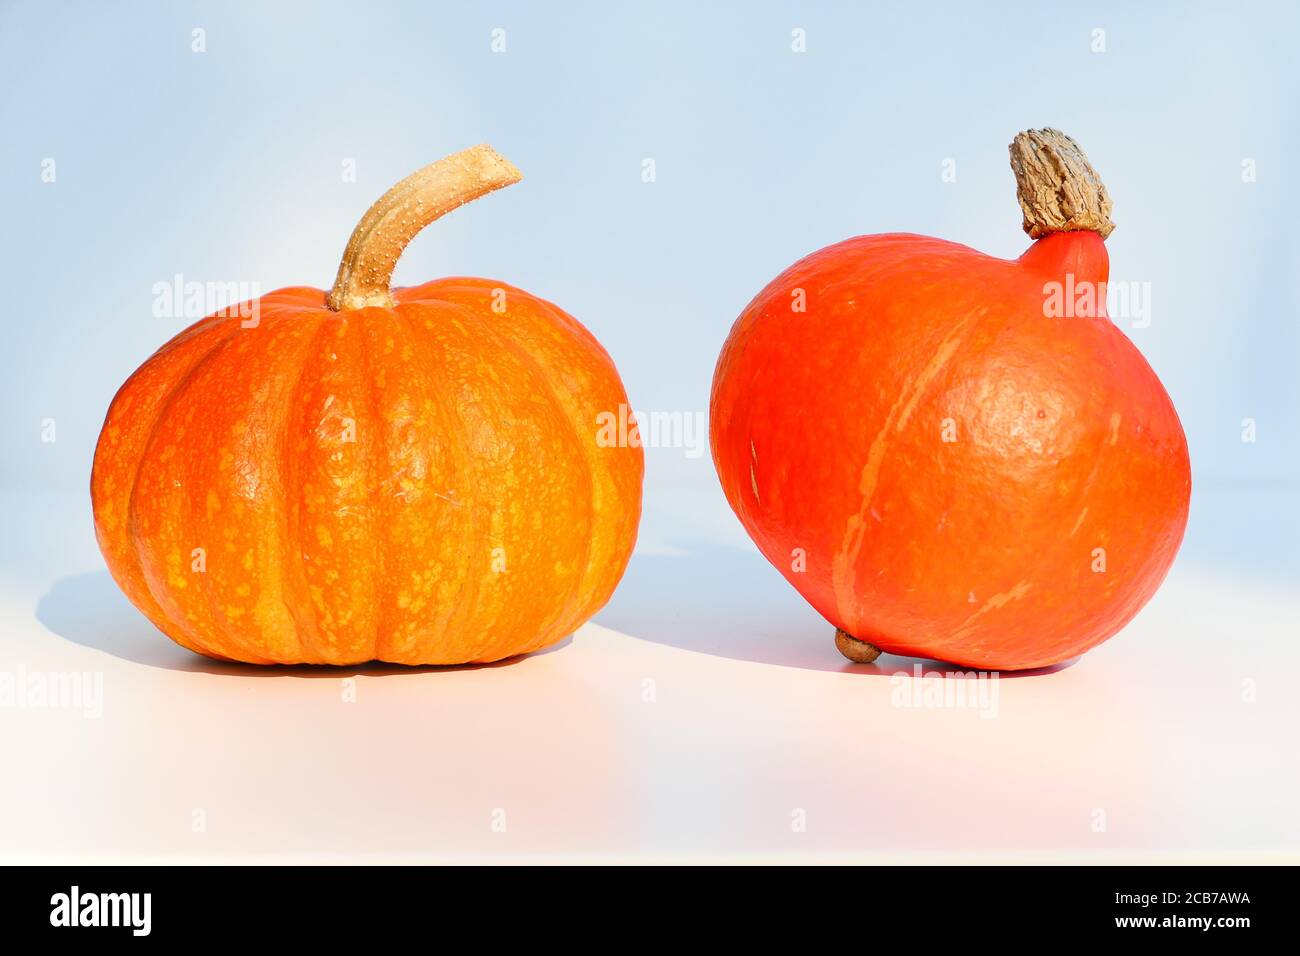 Two orange pumpkins, different varieties: Kabocha and Uchiki Kuri Hokkaido squash, Stock Photo